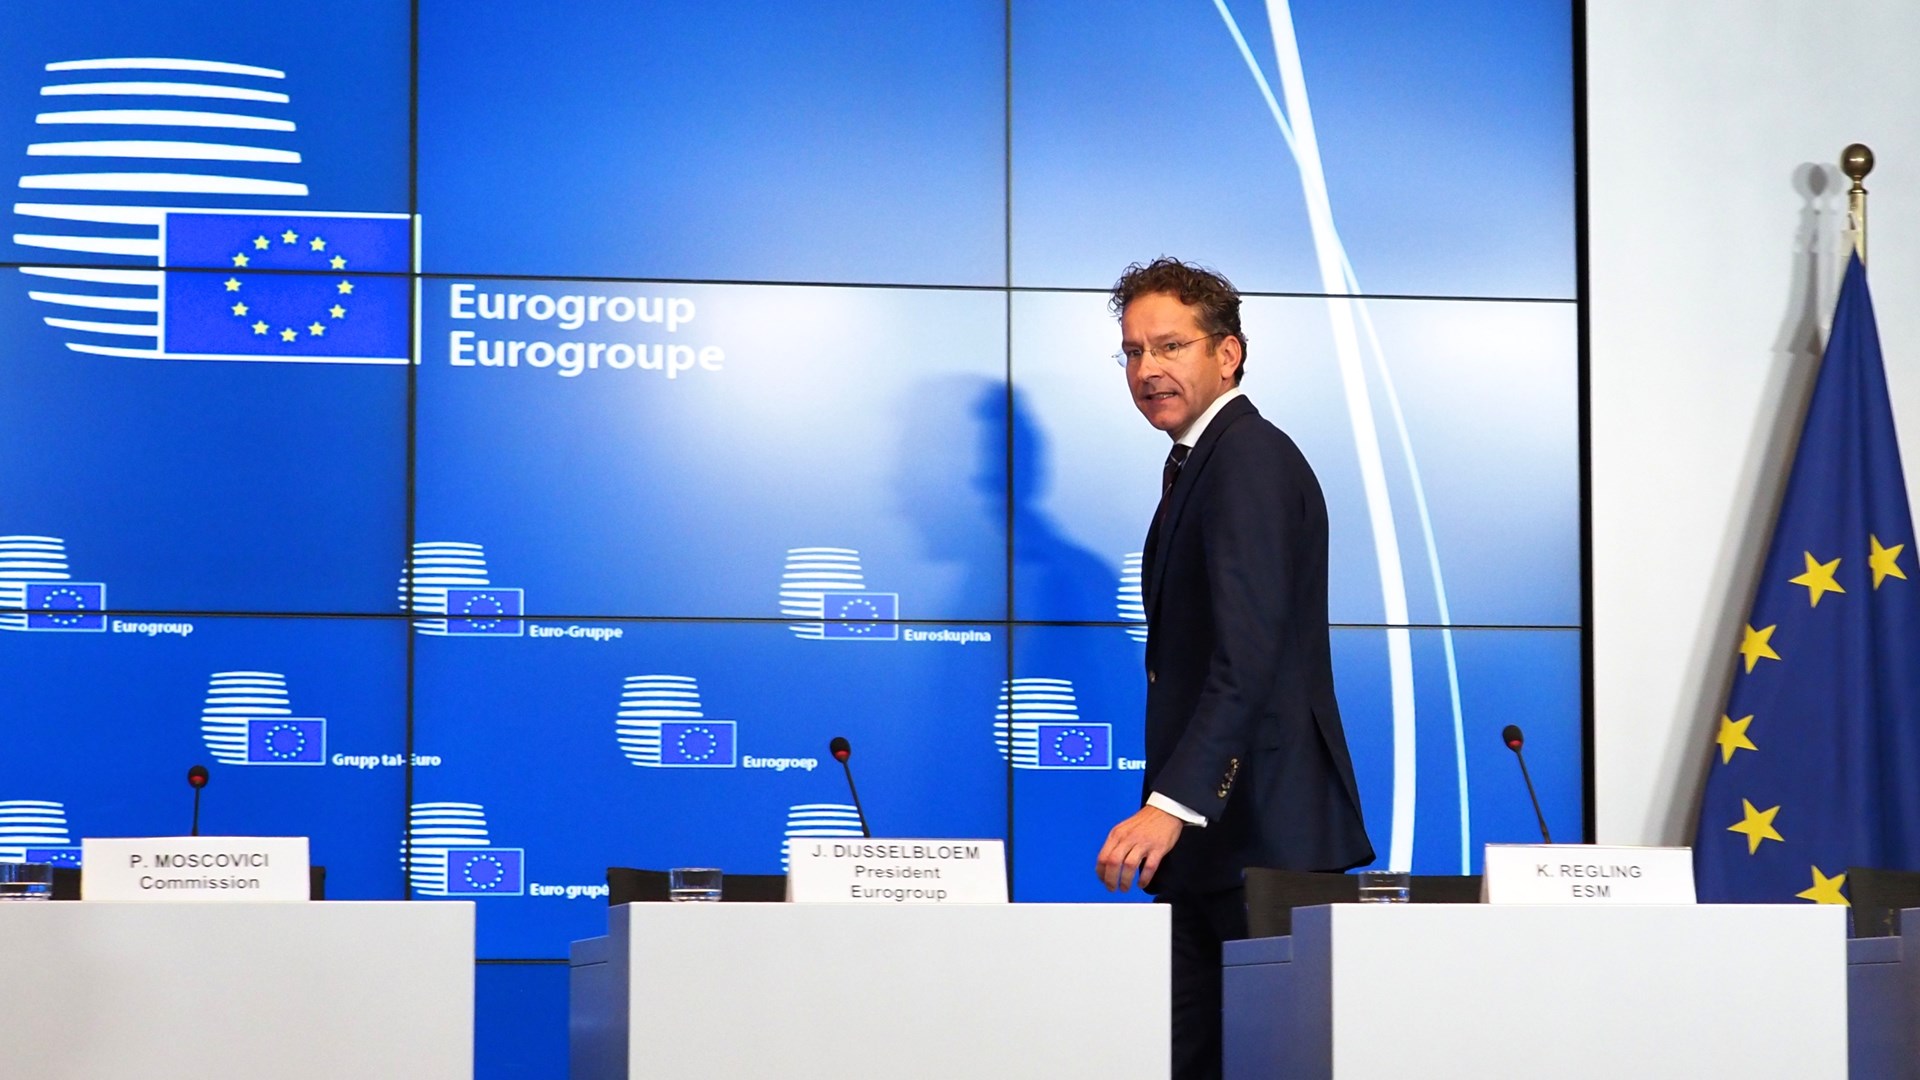 Τέλος και με τη βούλα ο Ντάισελμπλουμ – Αυτός είναι ο νέος πρόεδρος του Eurogroup